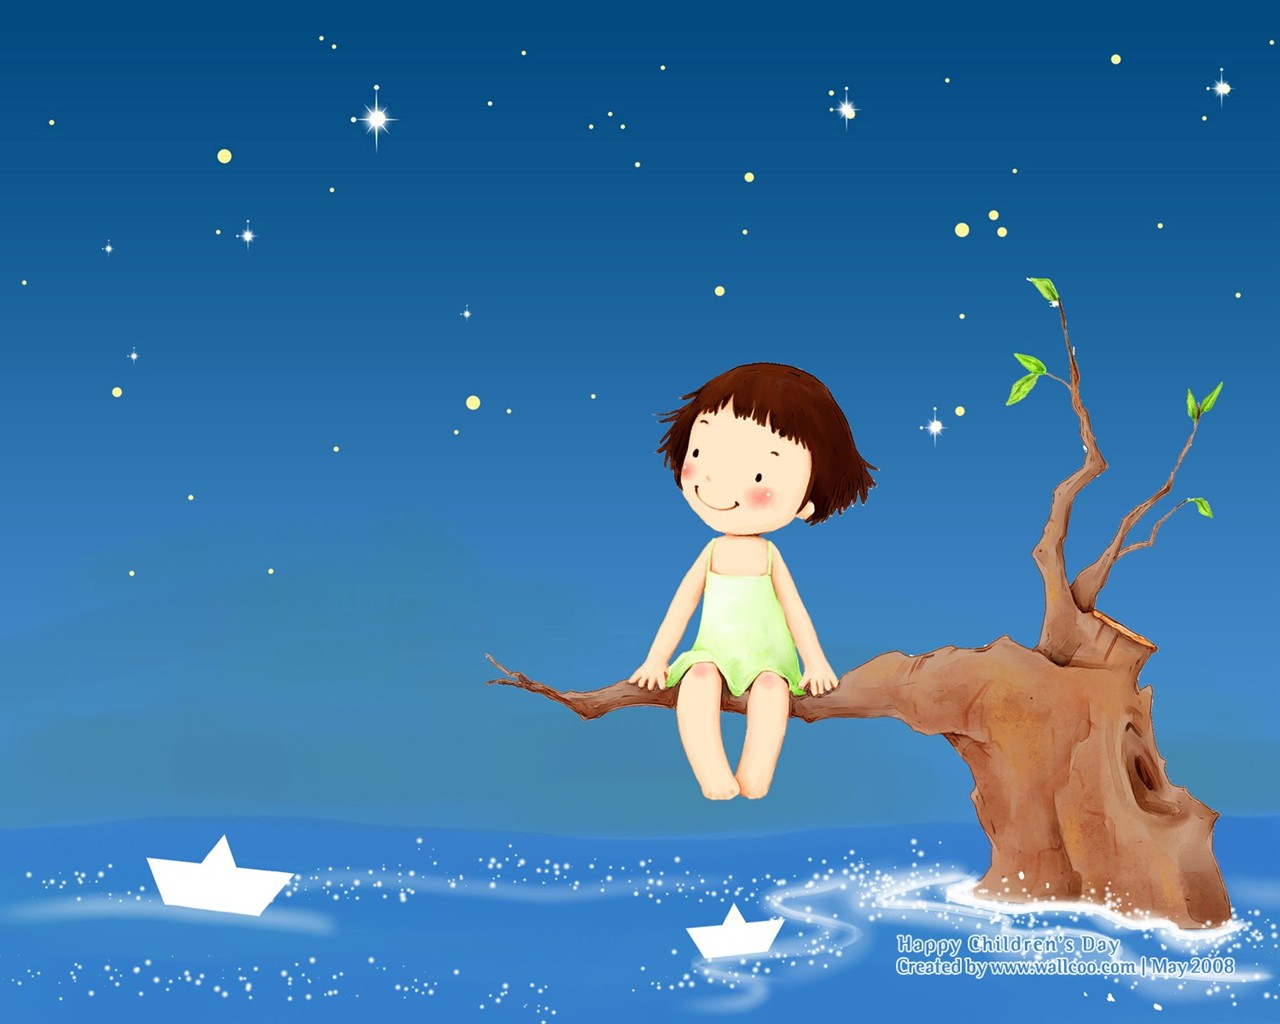 Lovely Children's Day wallpaper illustrator #4 - 1280x1024